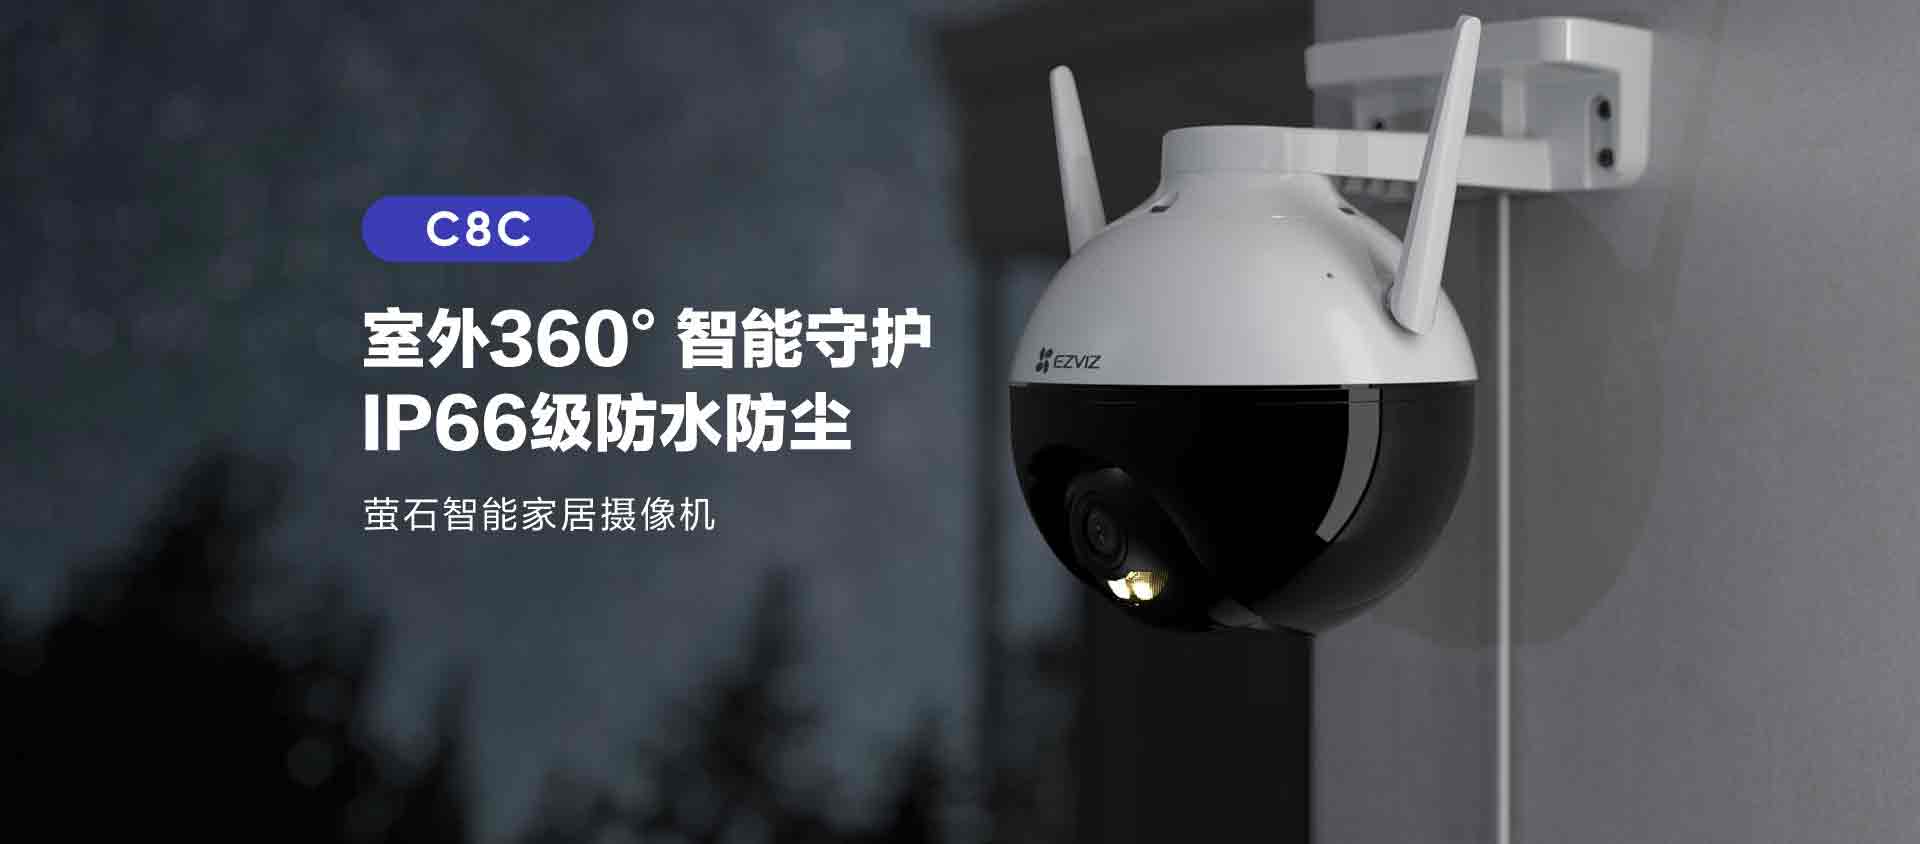 新品丨螢石首款室外全彩云臺機C8C驚艷登場，360°智能守護！